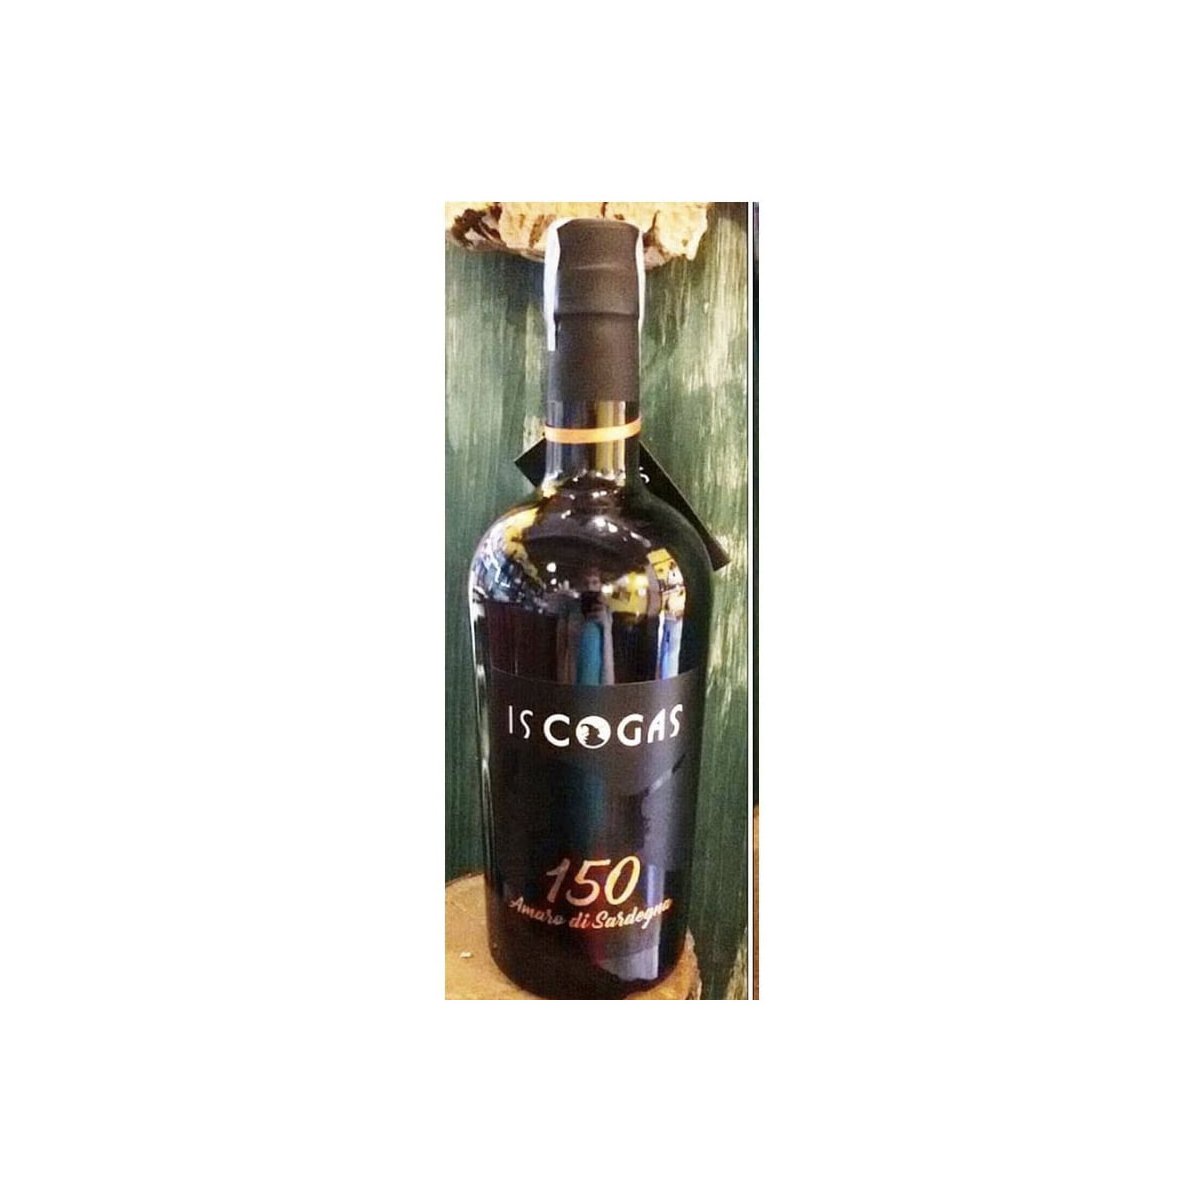 Amaro 150 Is Cogas Sardegna 70cl